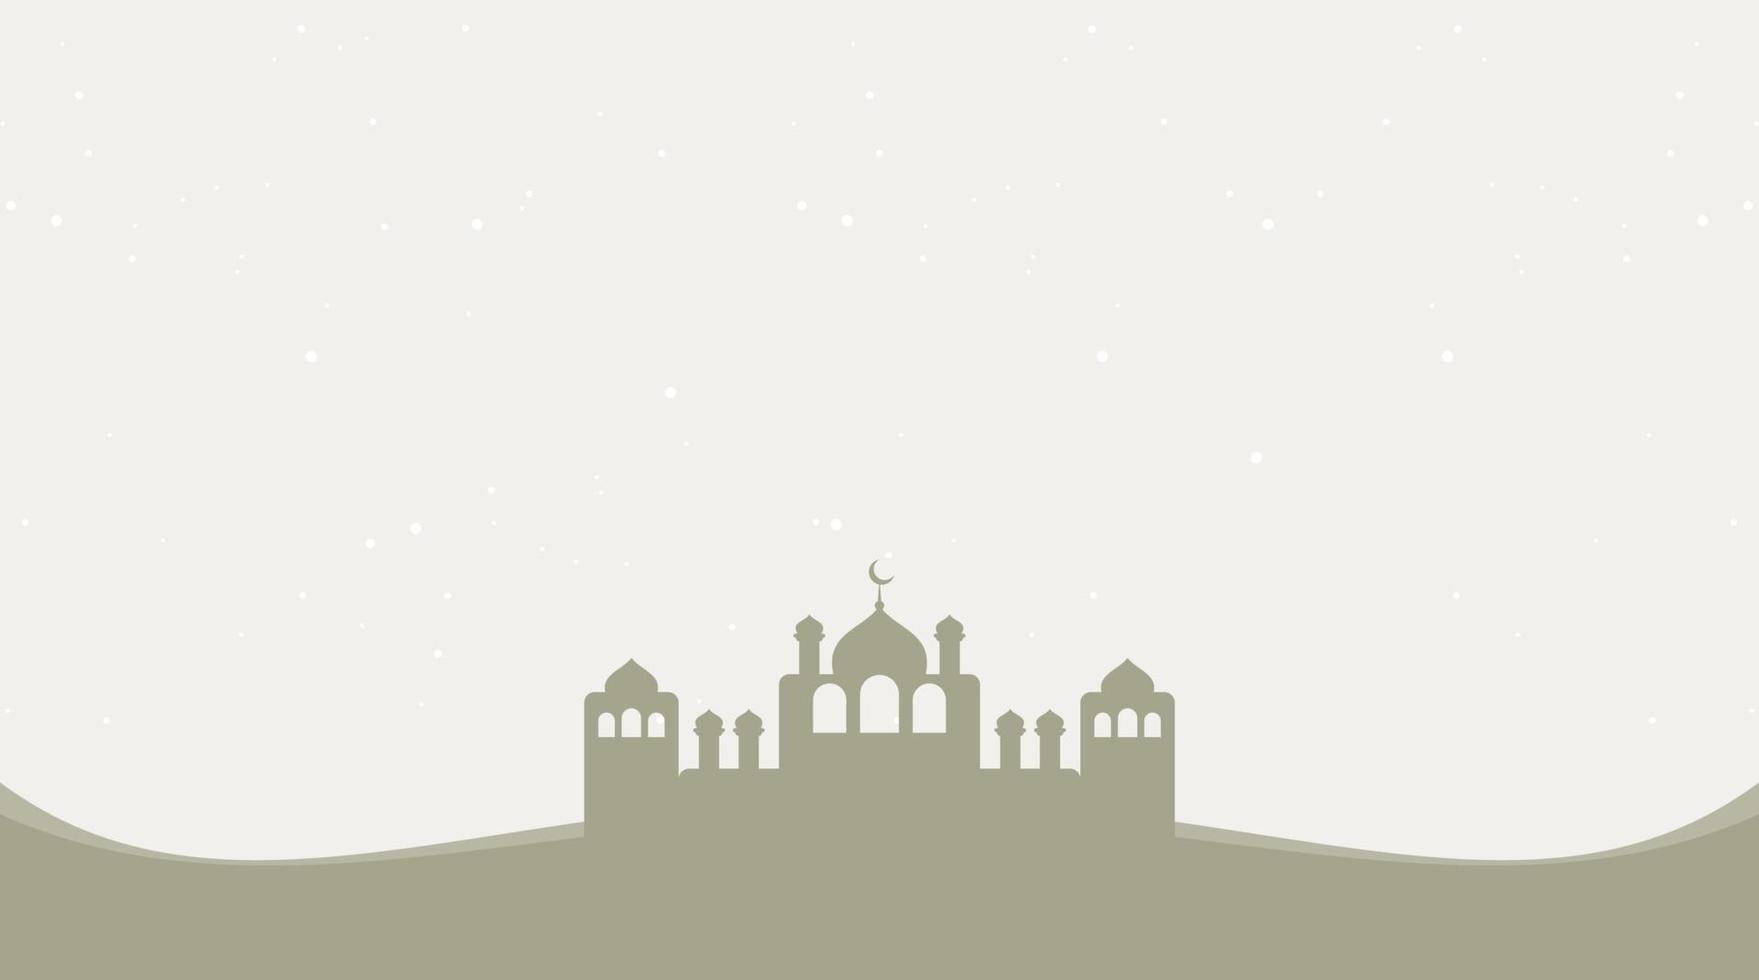 islamisches hintergrunddesign. Ramadan-Hintergrund. Eid Mubarak-Hintergrund vektor